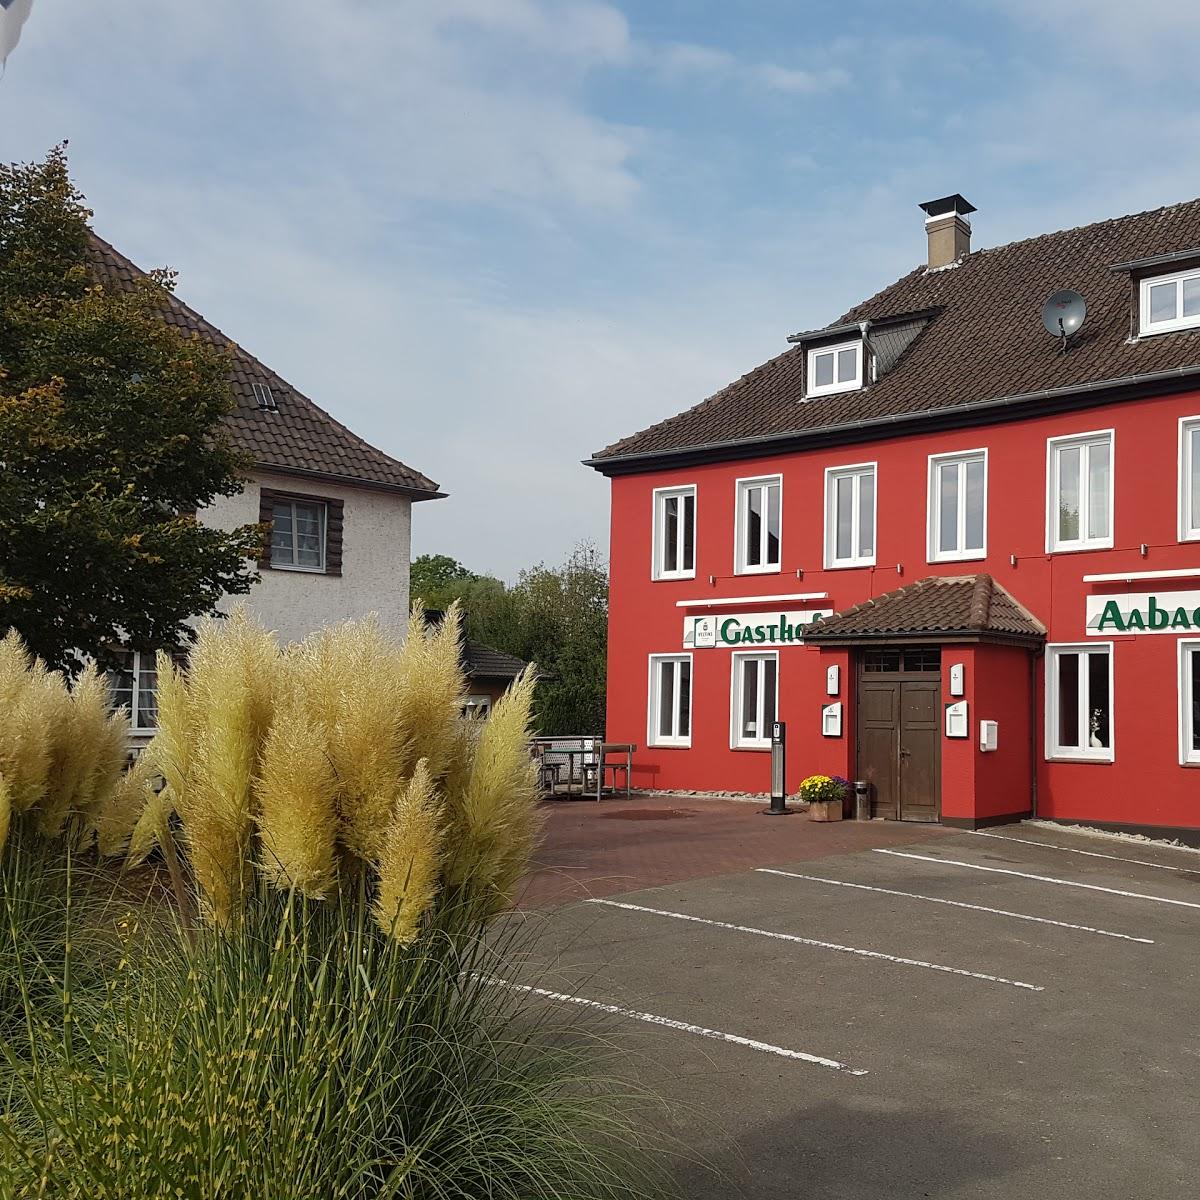 Restaurant "Gaststätte Zum Aabachtal" in Brakel